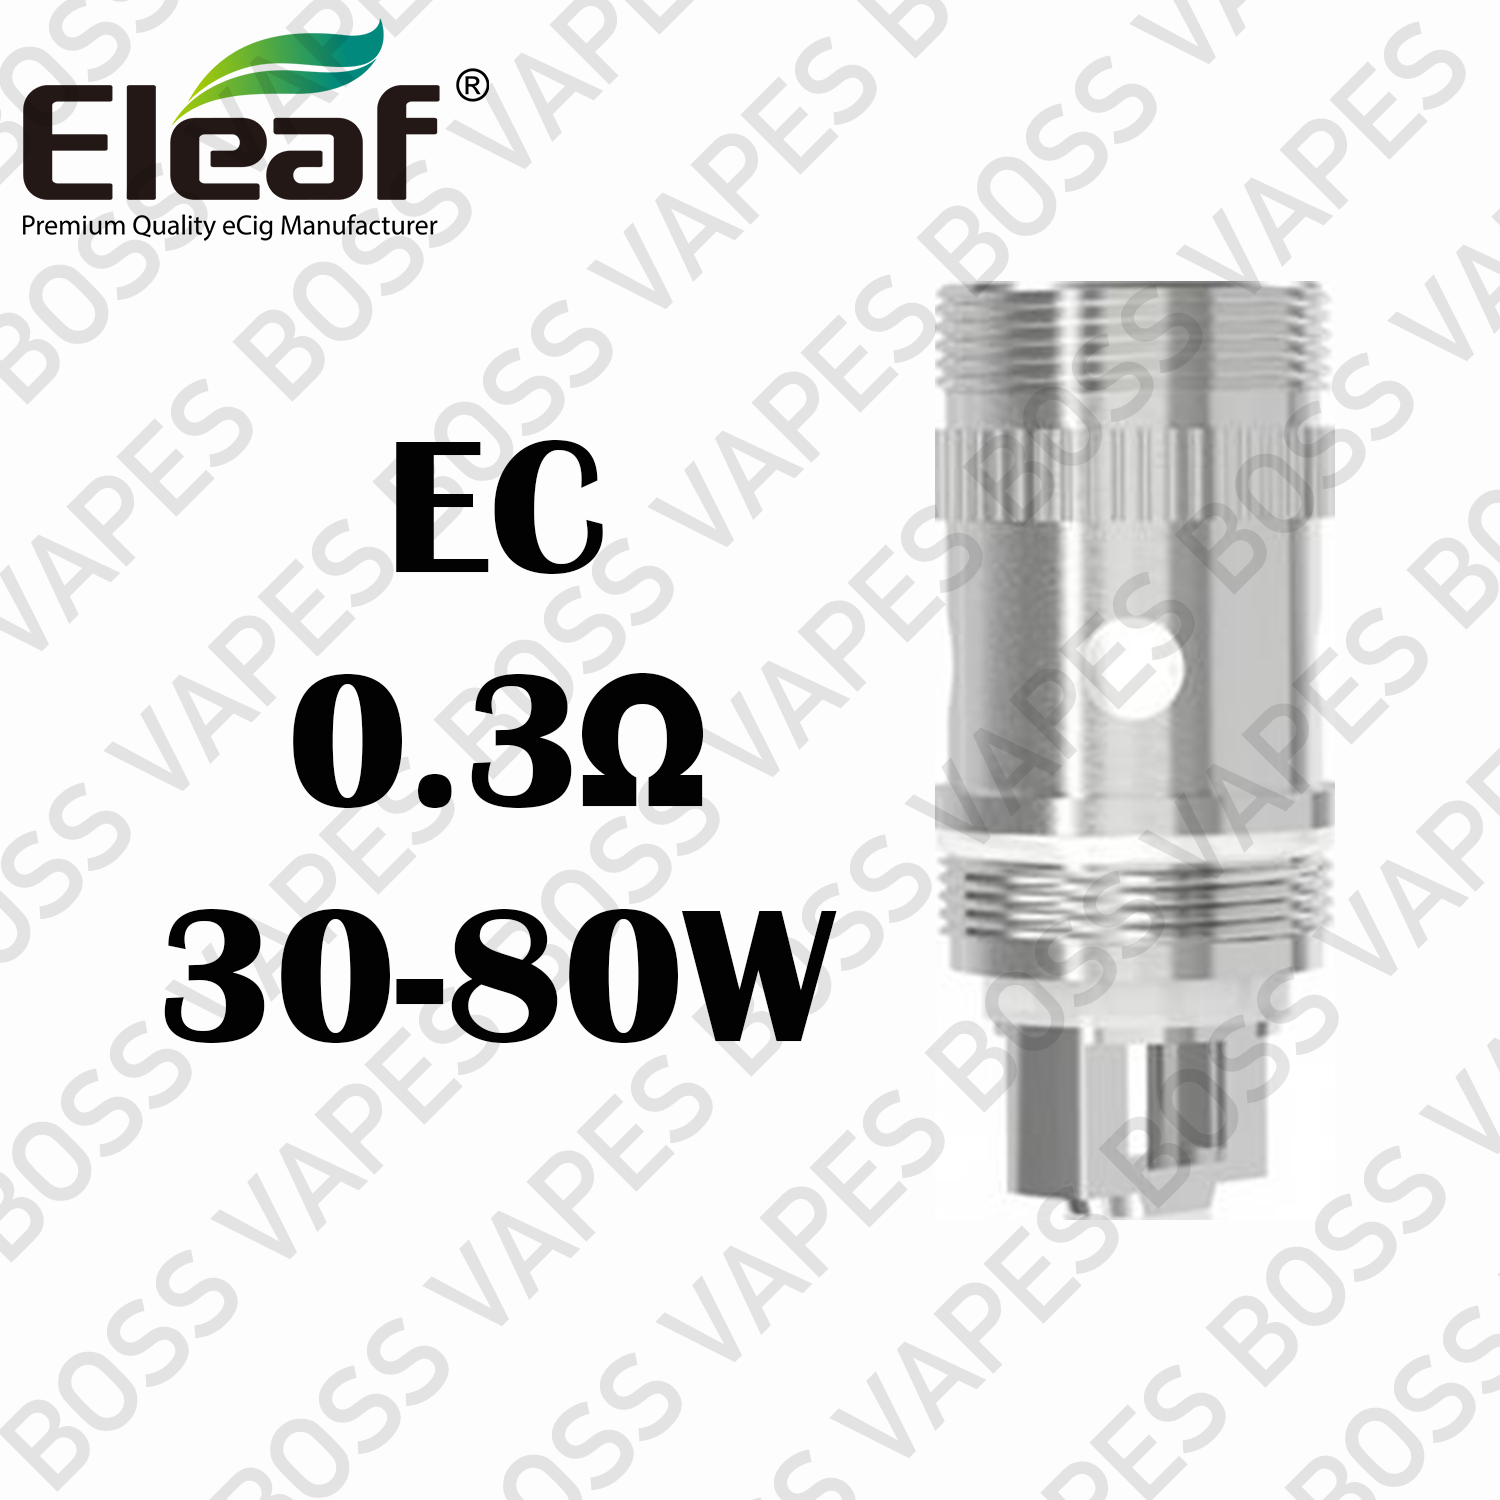 Eleaf EC Coils (iJust 2) Price Per Coil - Boss Vapes